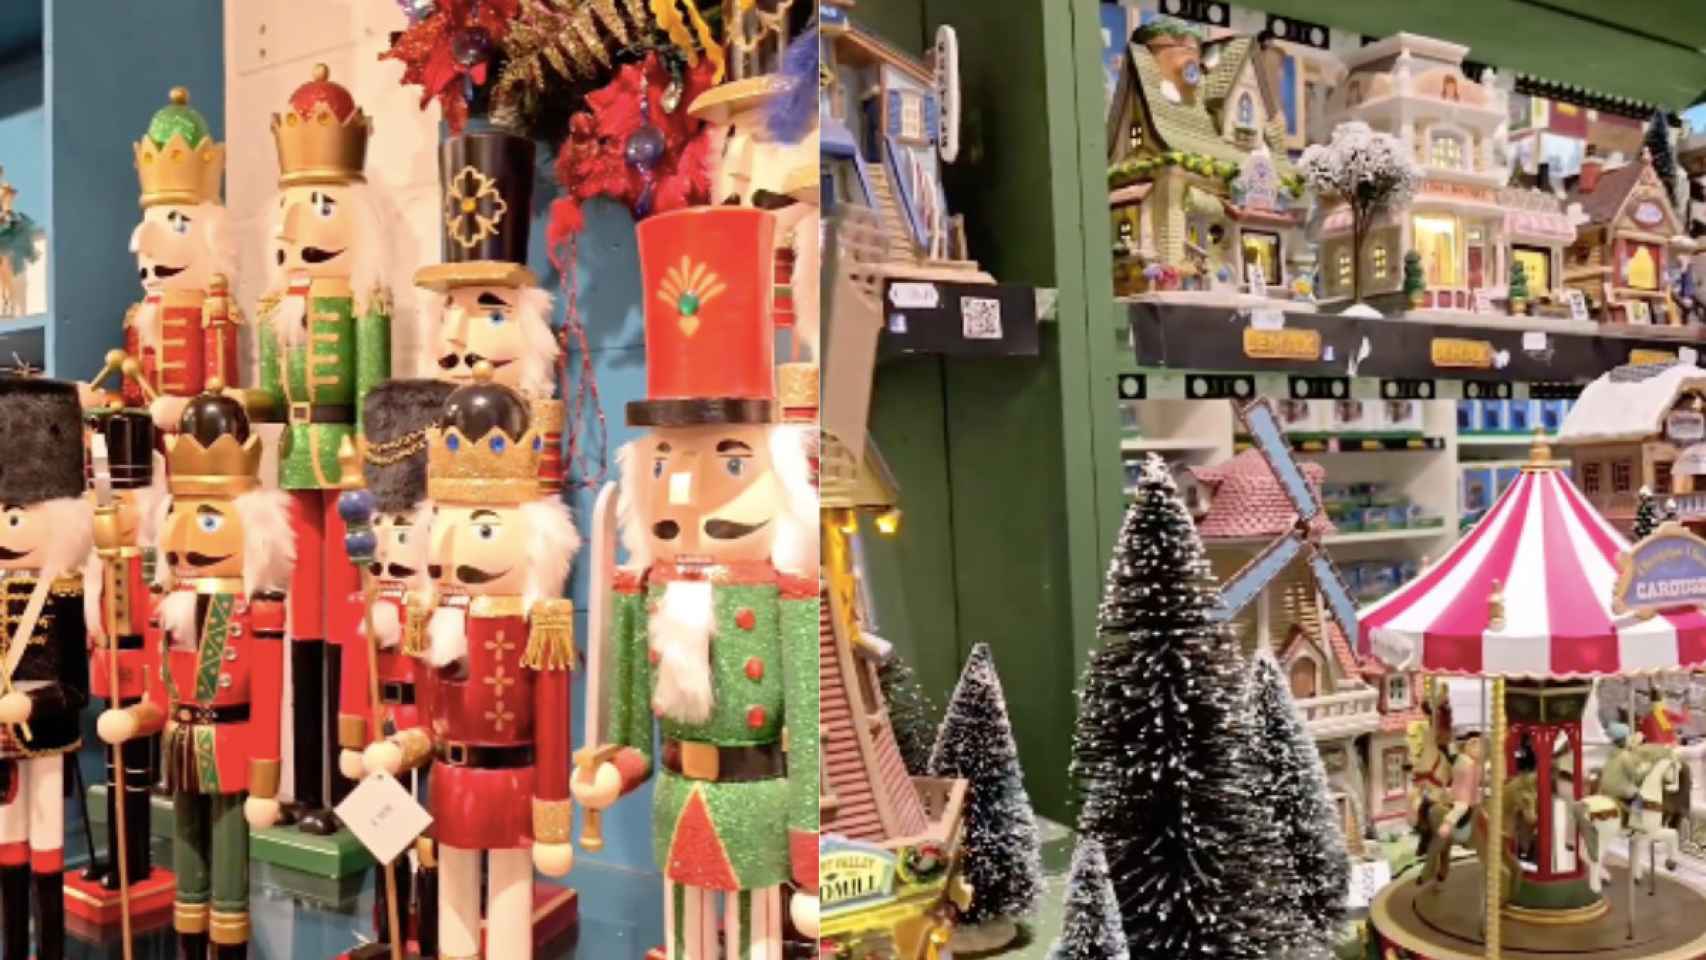 Navidecor, la tienda de decoraciones navideñas más grande de toda España, ubicada en Sant Fruitós de Bages